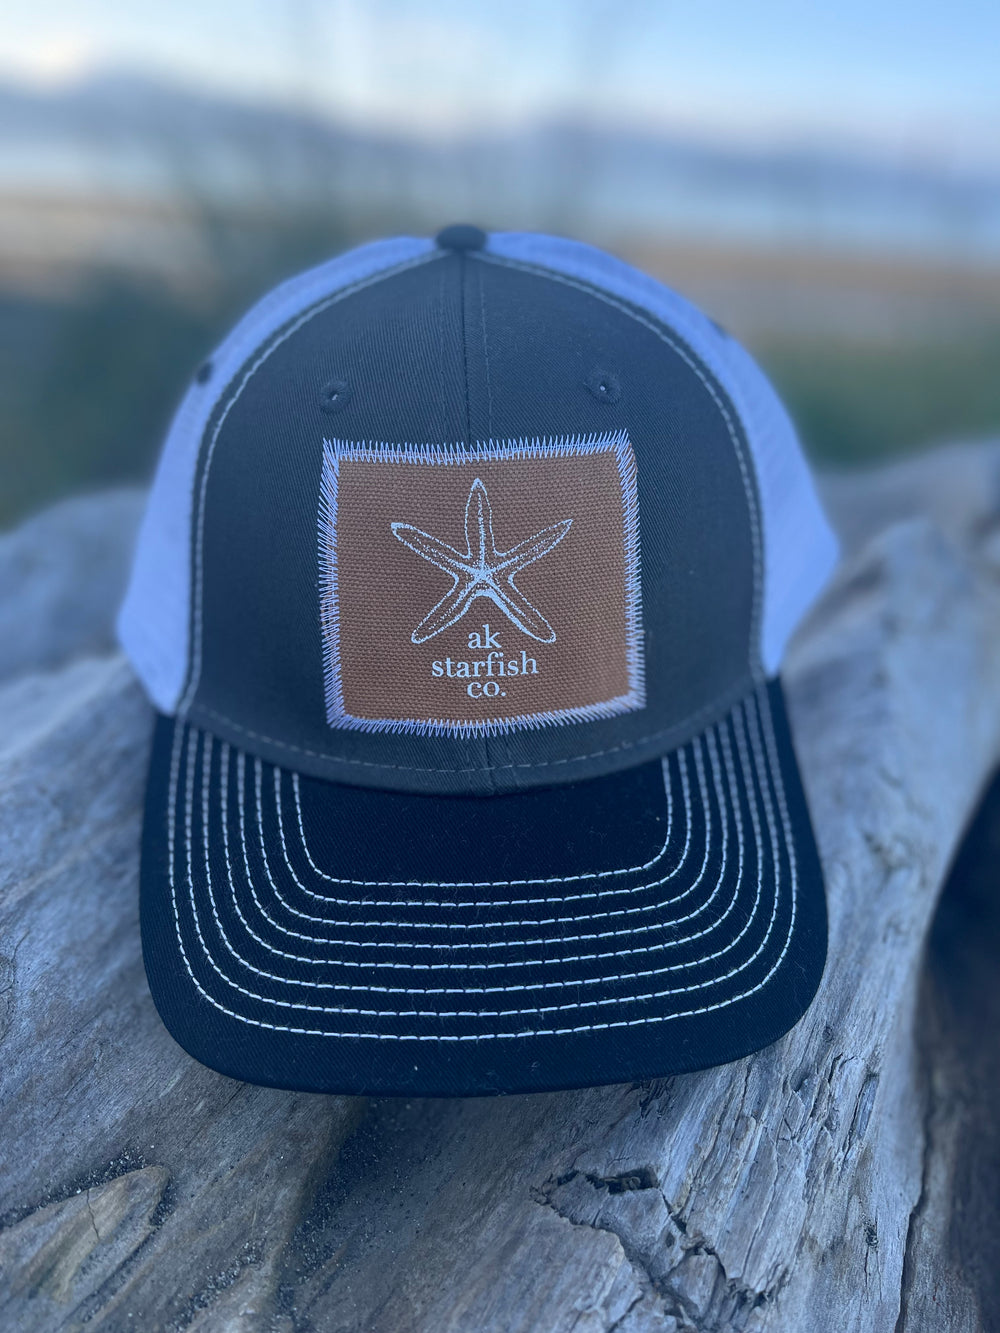 Slate / Black / White AK Starfish Co. Patch Hat. $38.00